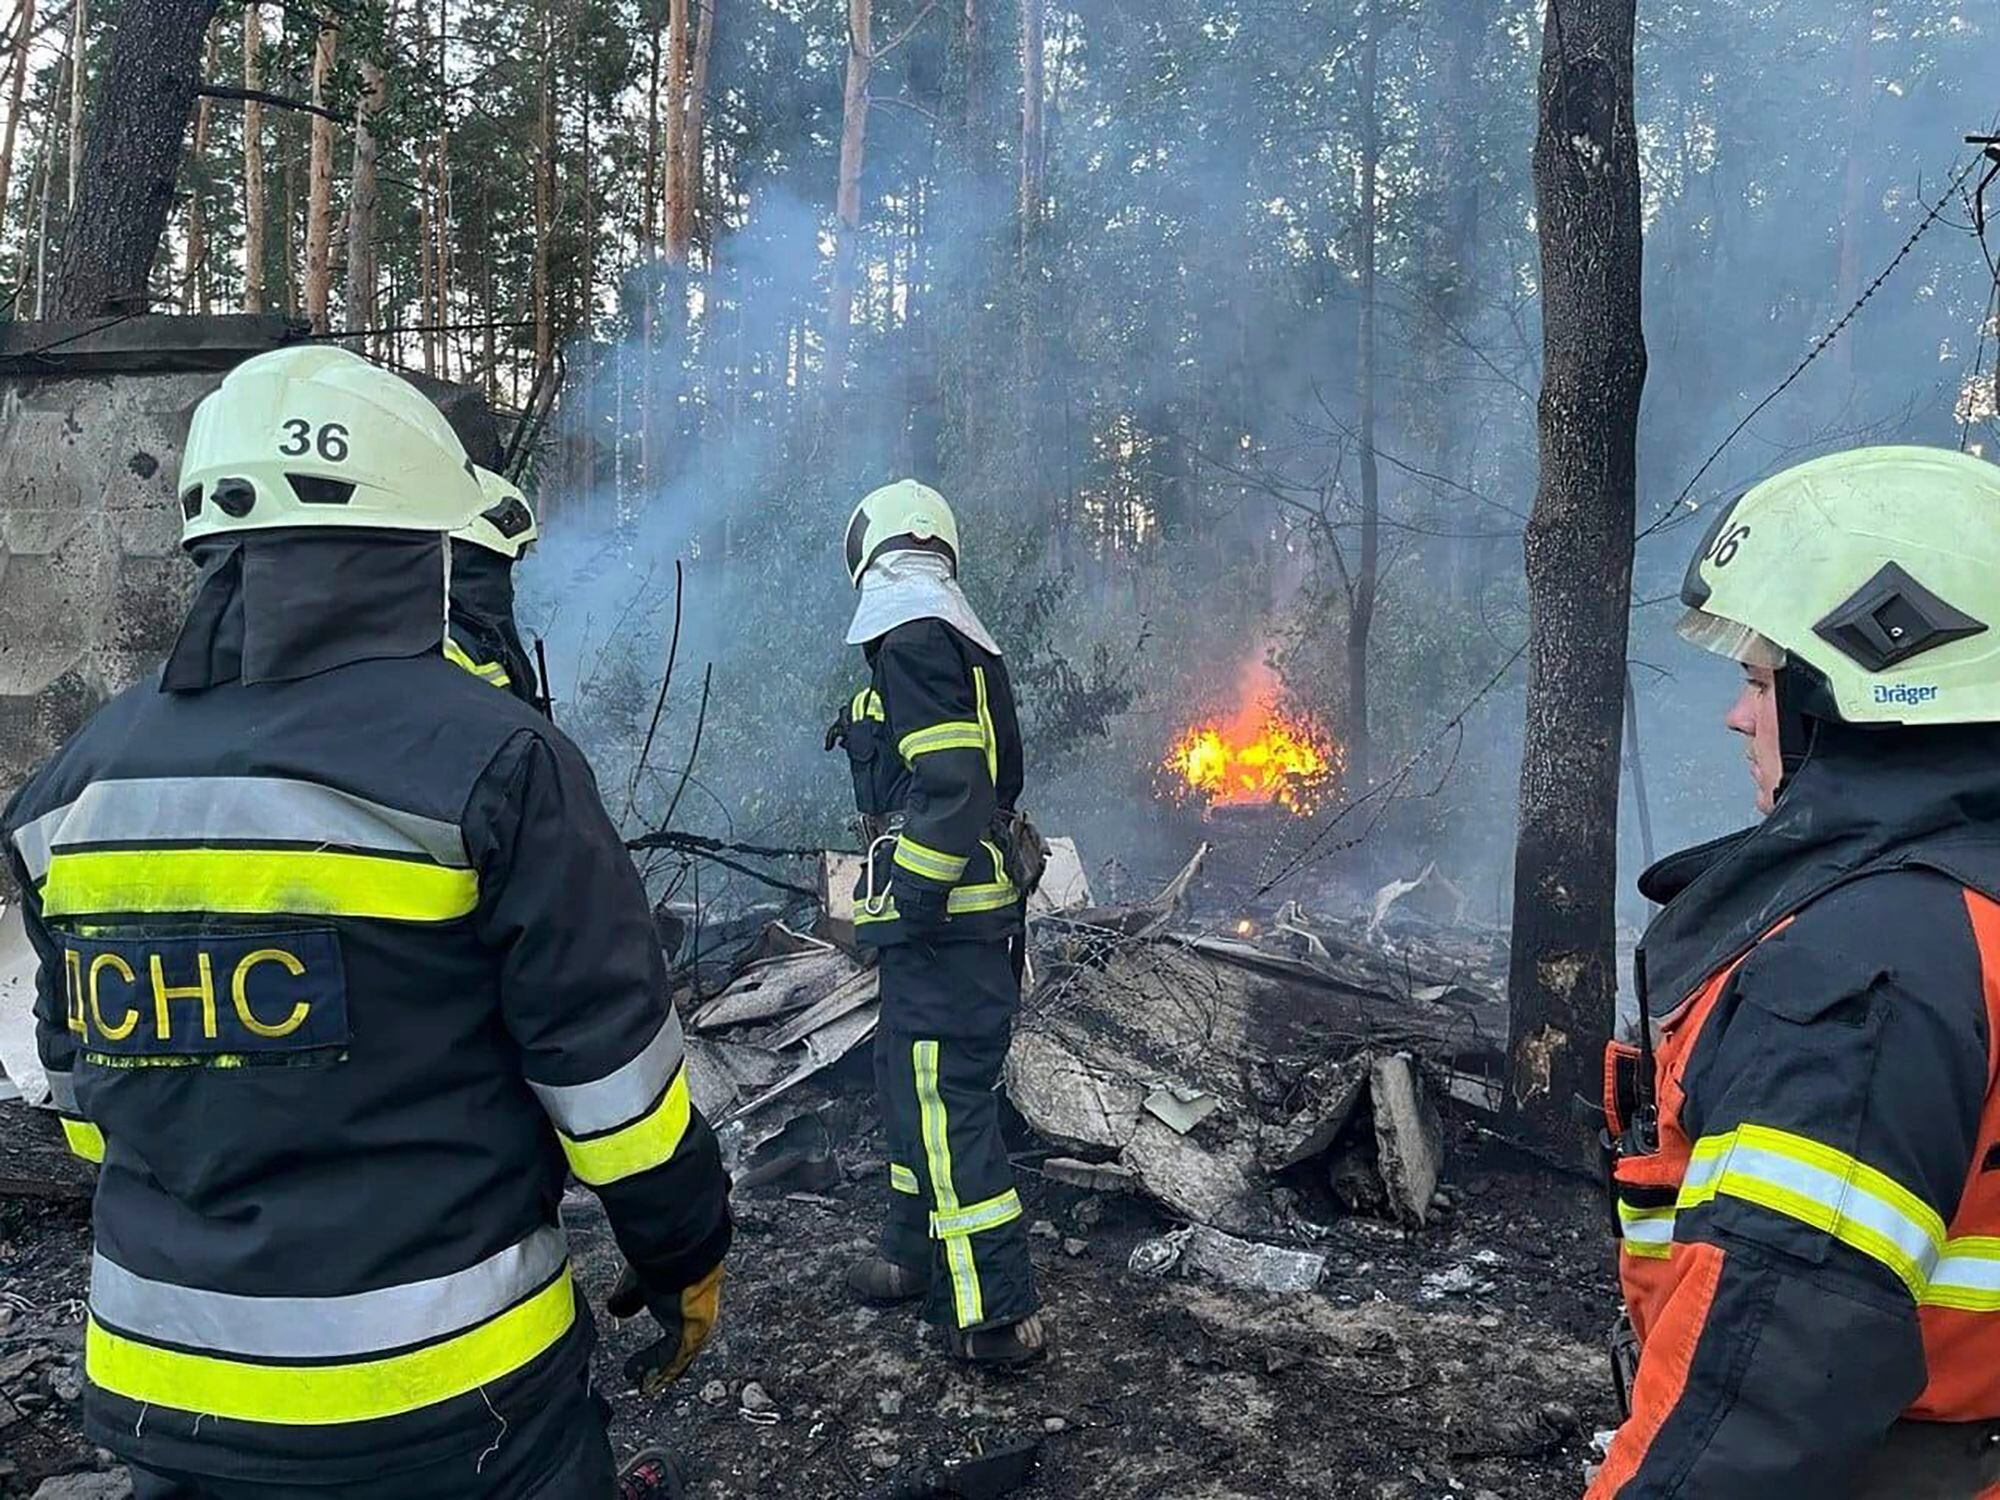 Rescatistas trabajan en la extinción de un incendio tras un ataque ruso en la región de Kiev, Ucrania, este miércoles. (Servicios de Emergencia de Ucrania vía AP)